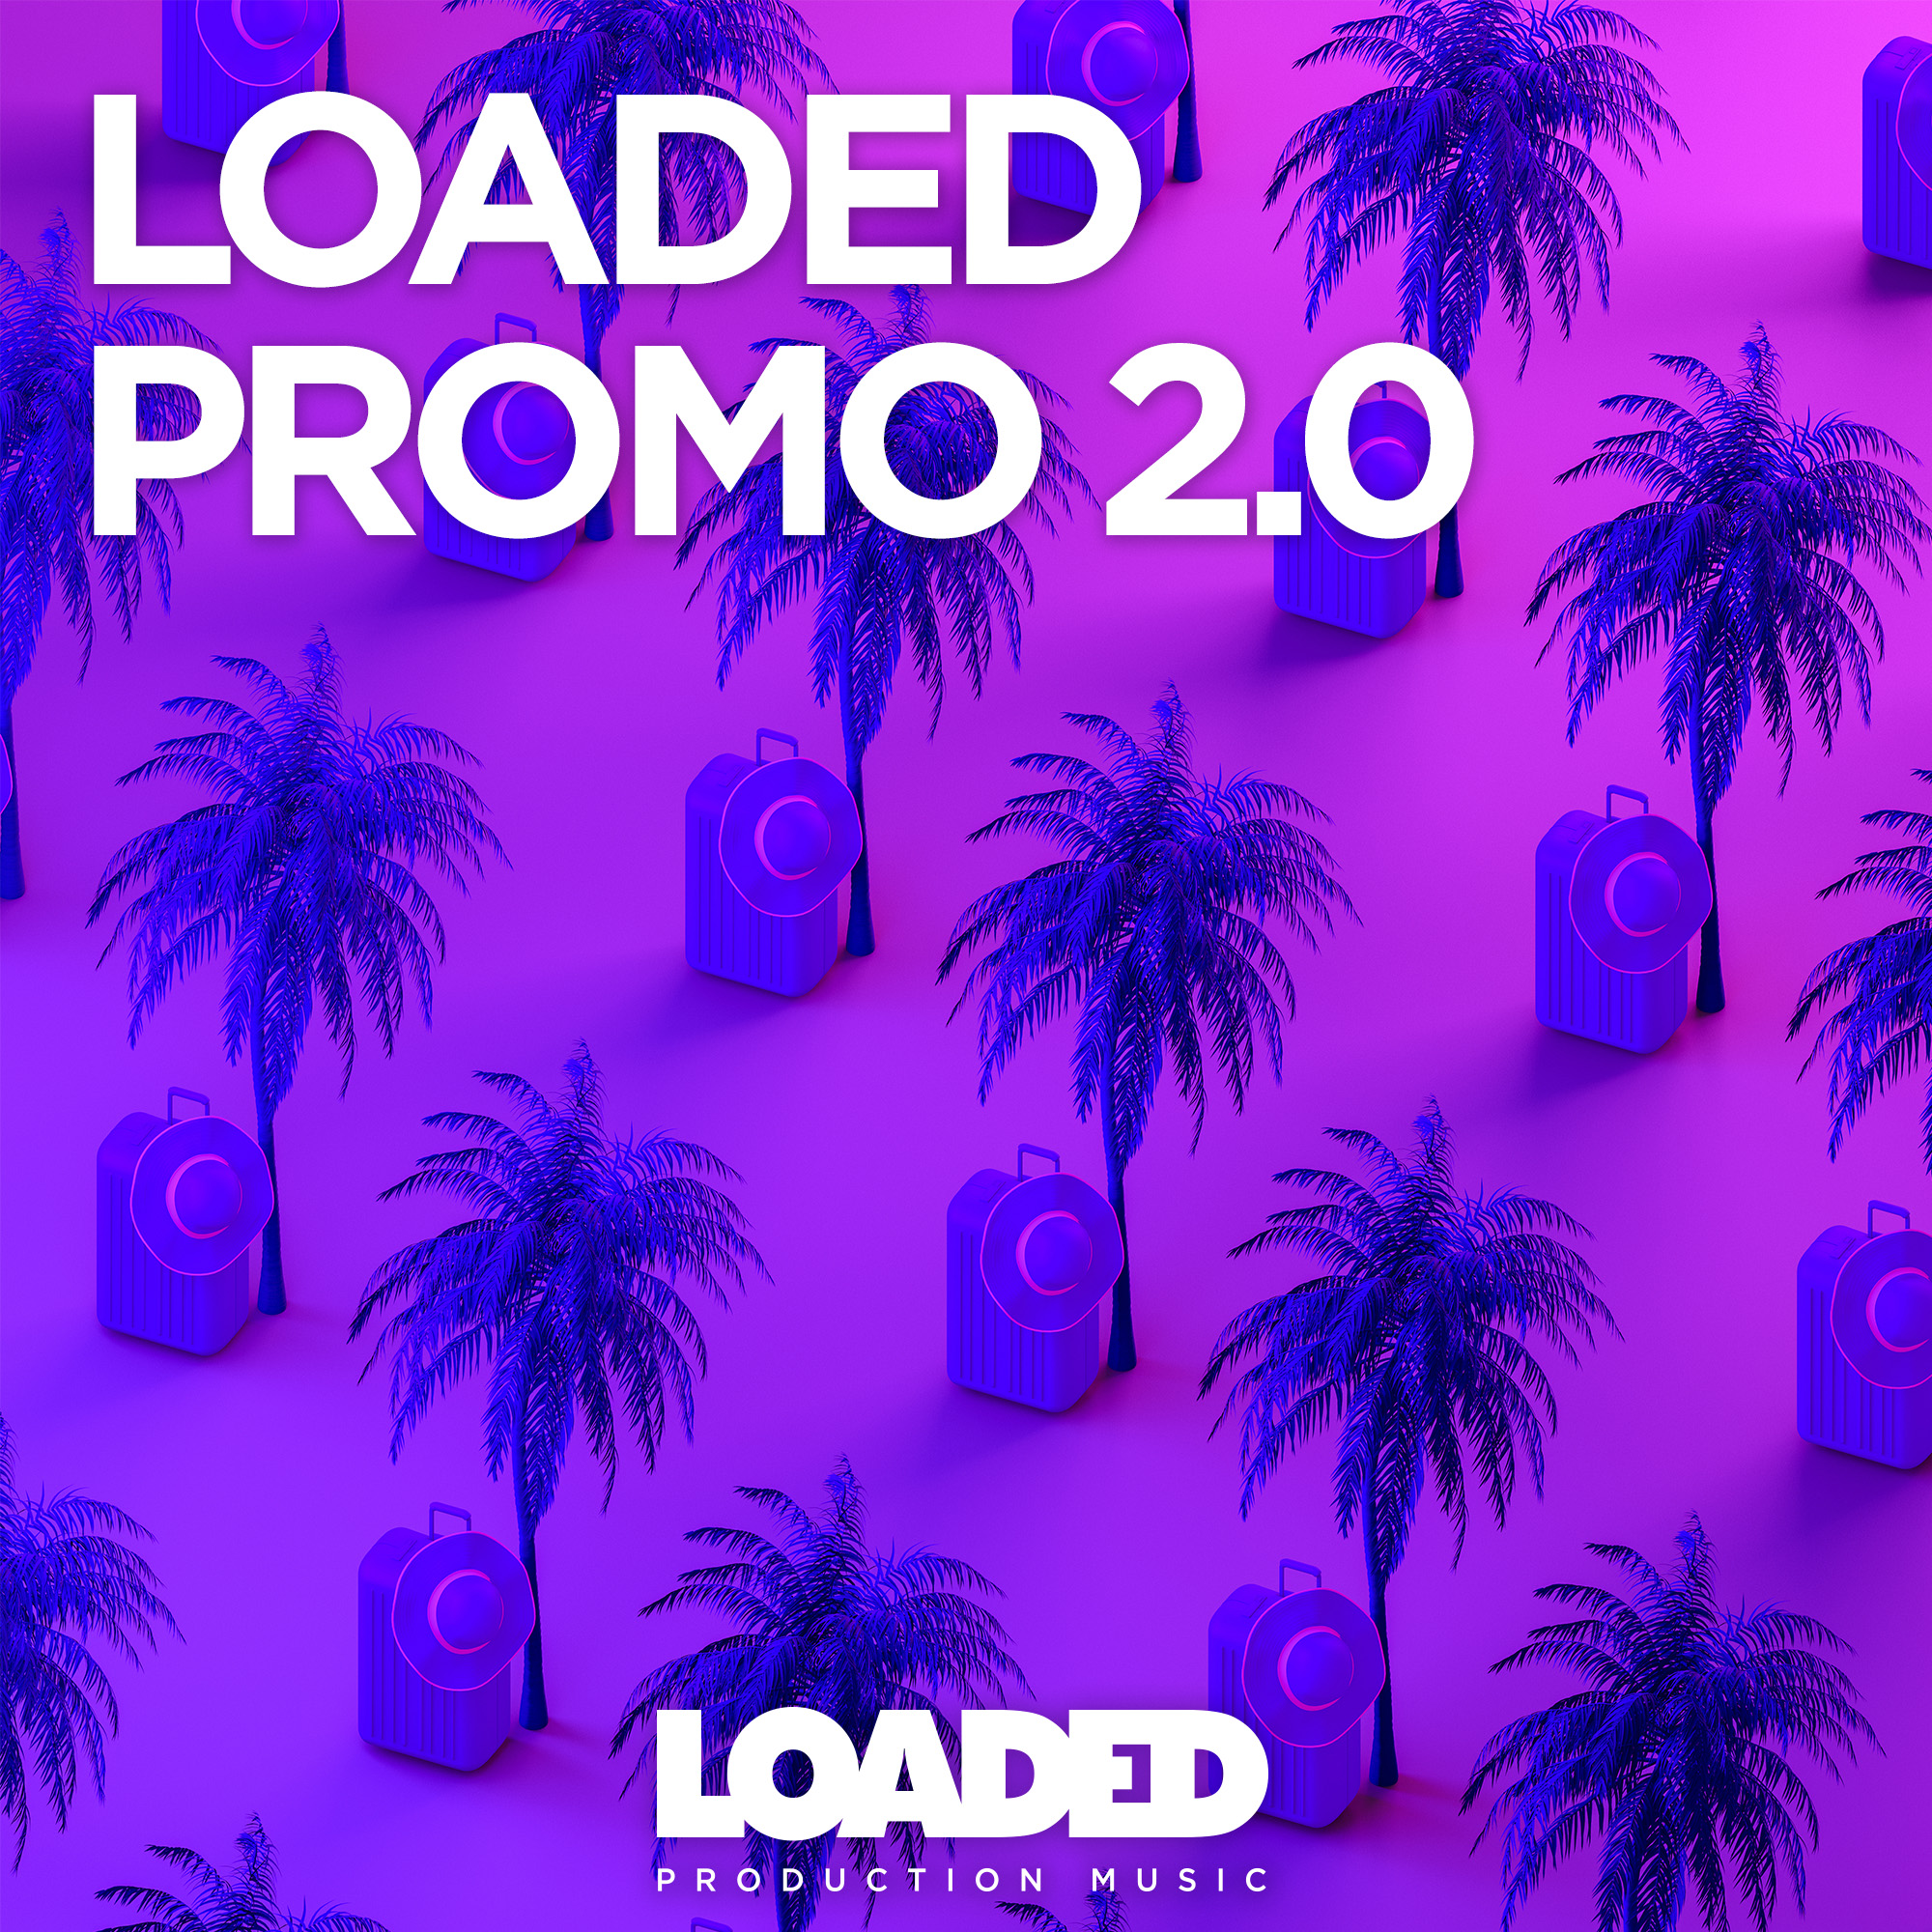 LPM 032 - Loaded Promo 2.0 - Album Cover